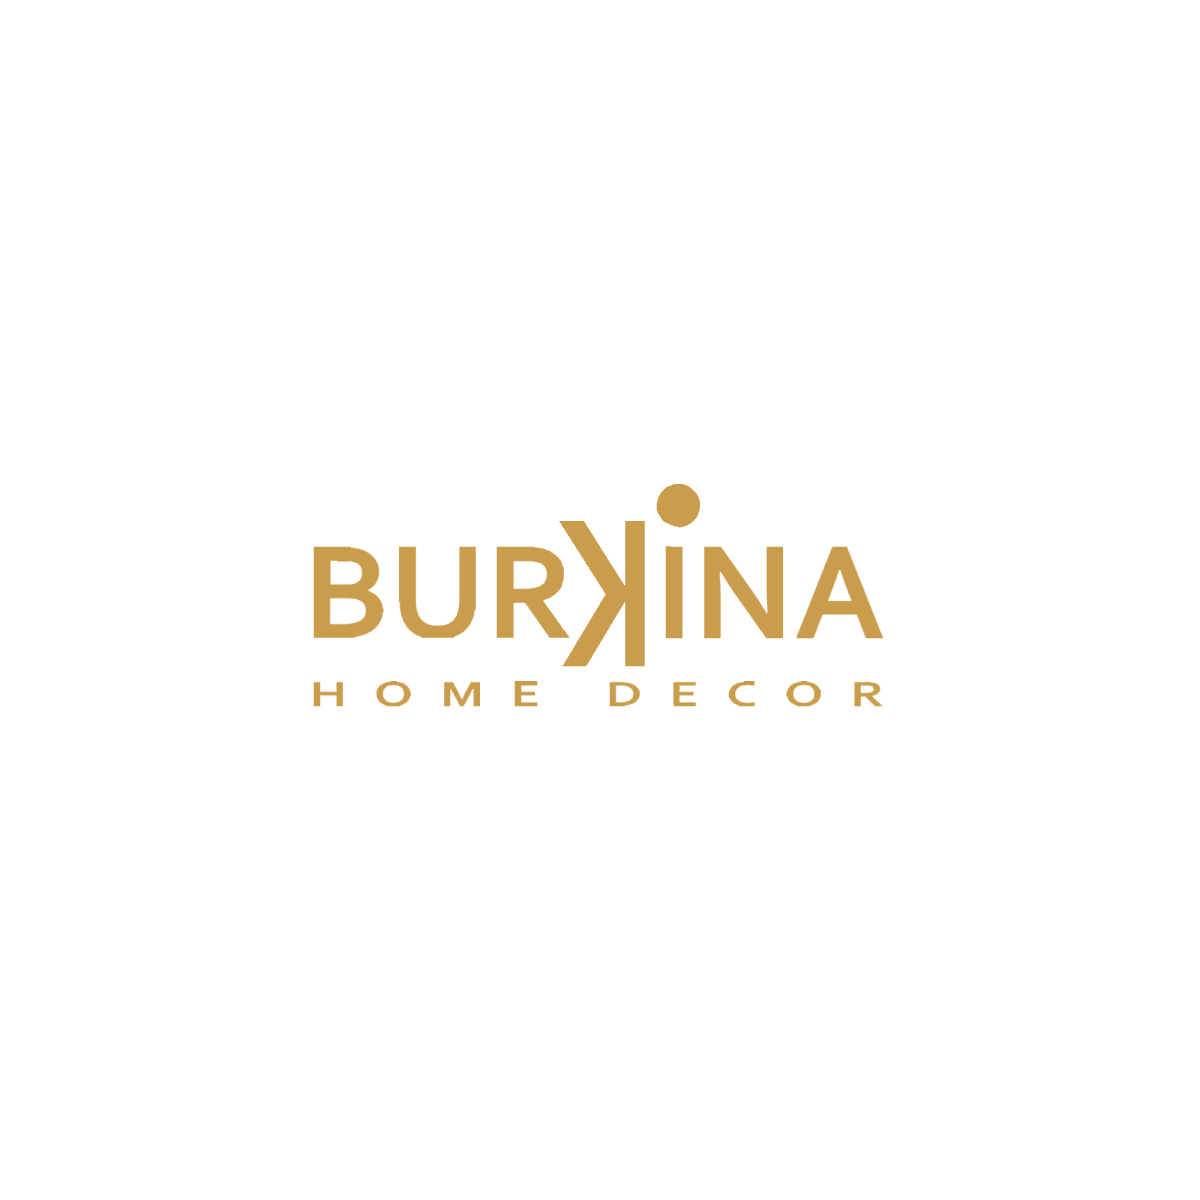 Burkina home decor logo